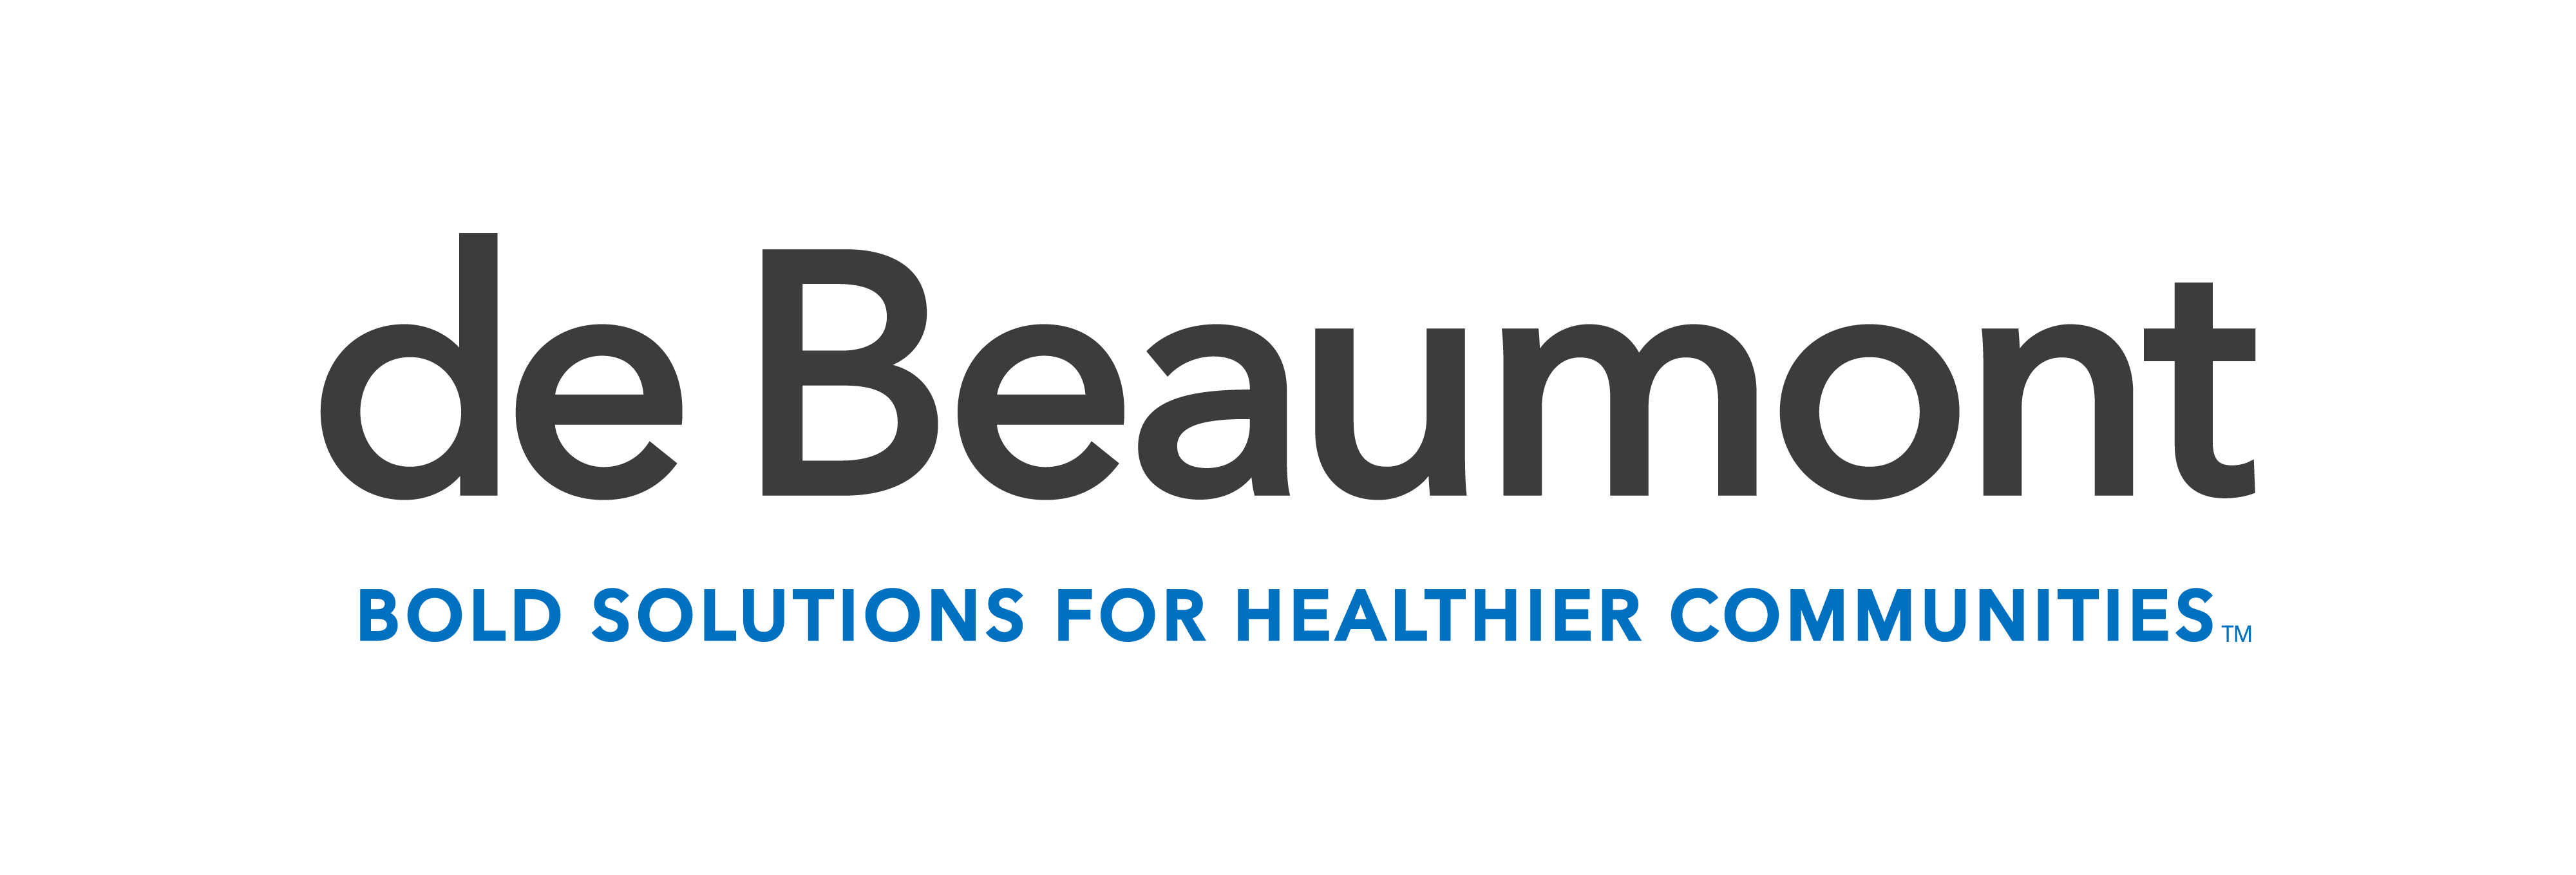 Beaumont Logo - Home page - de Beaumont Foundation